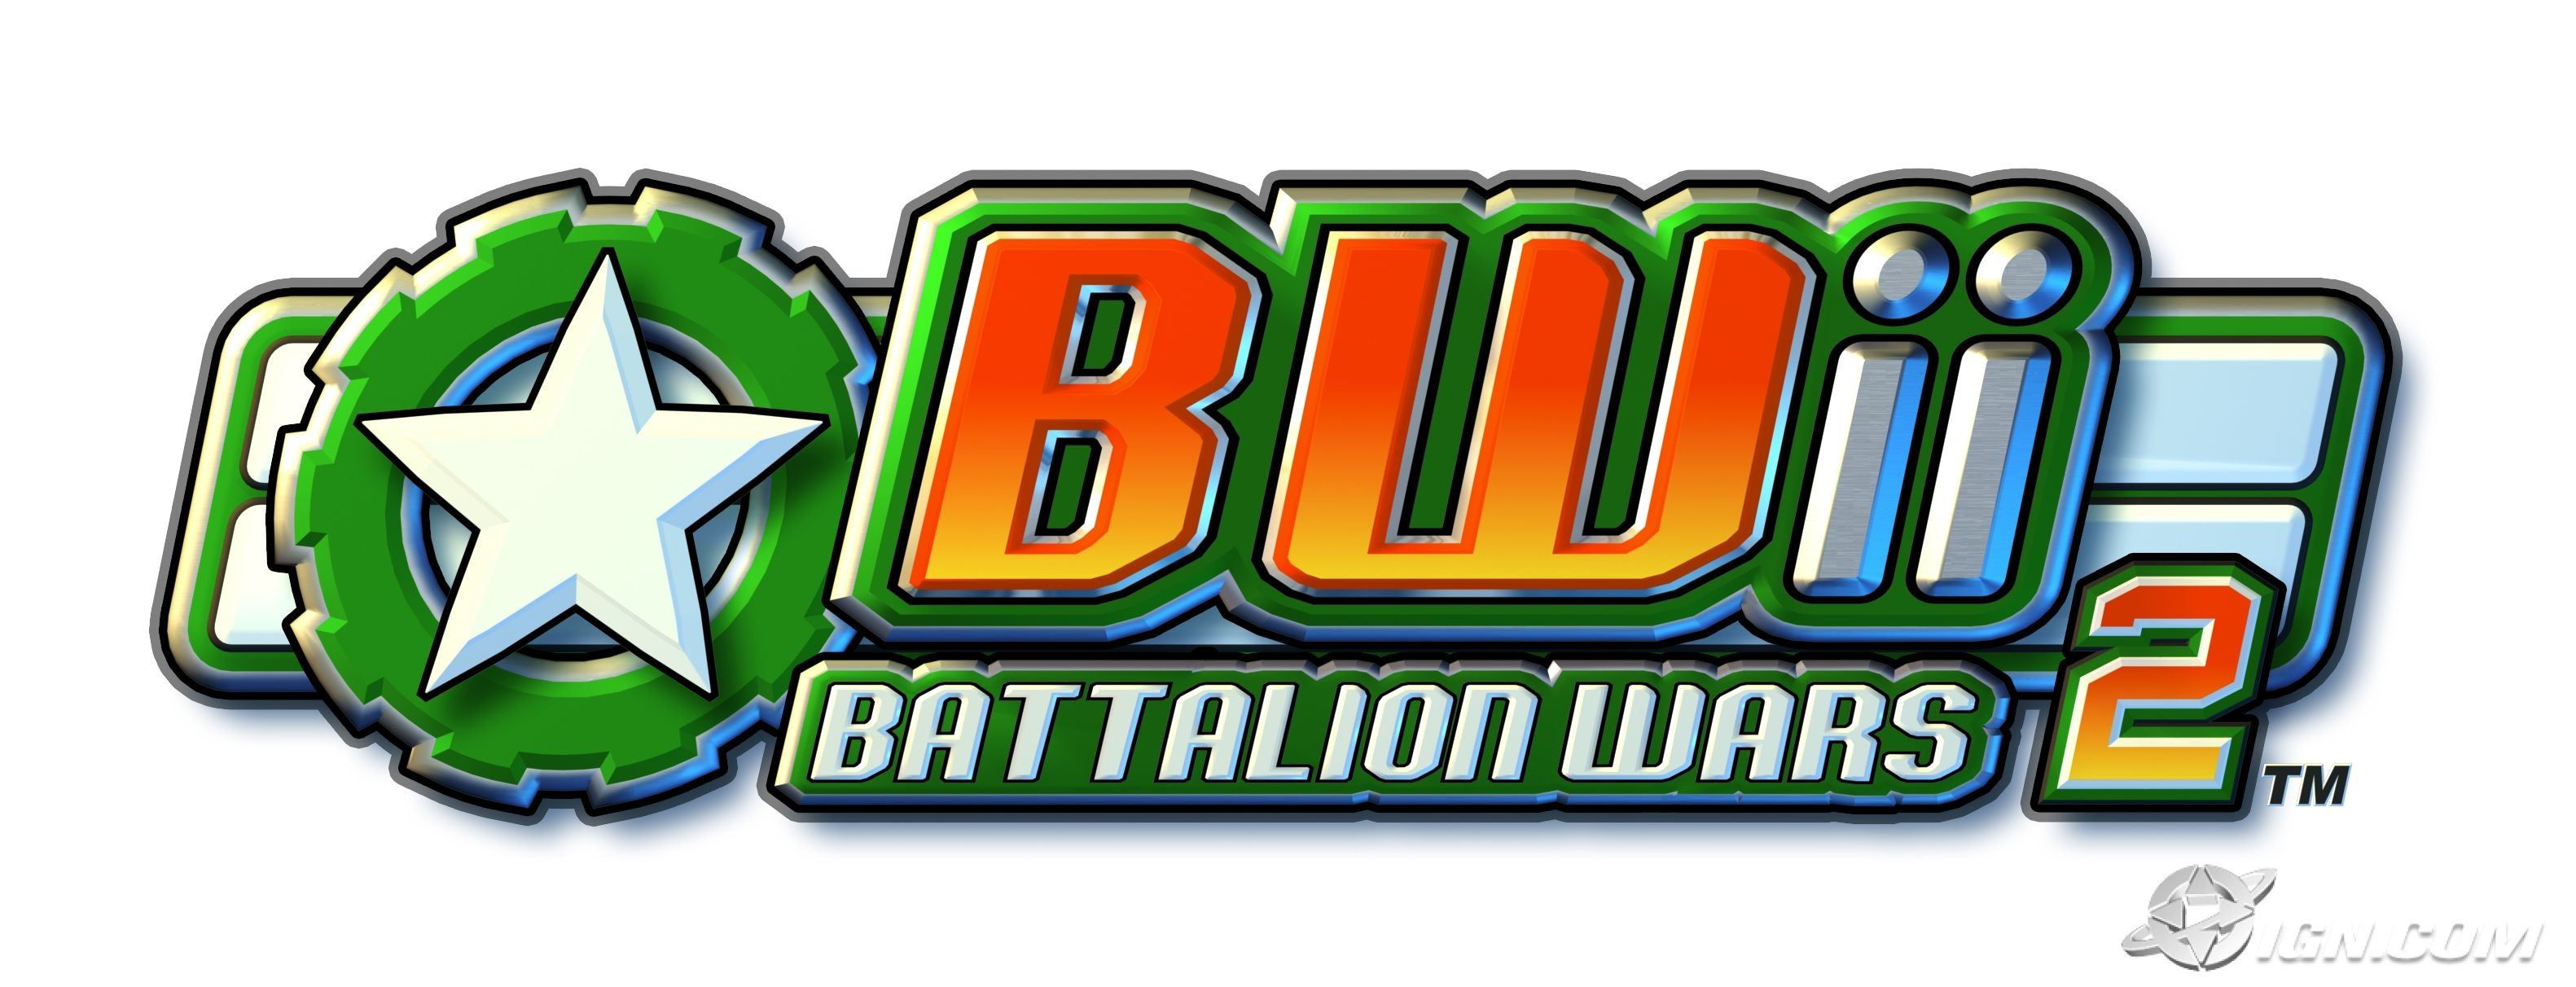 battalion-wars-2-20070711000629139.jpg